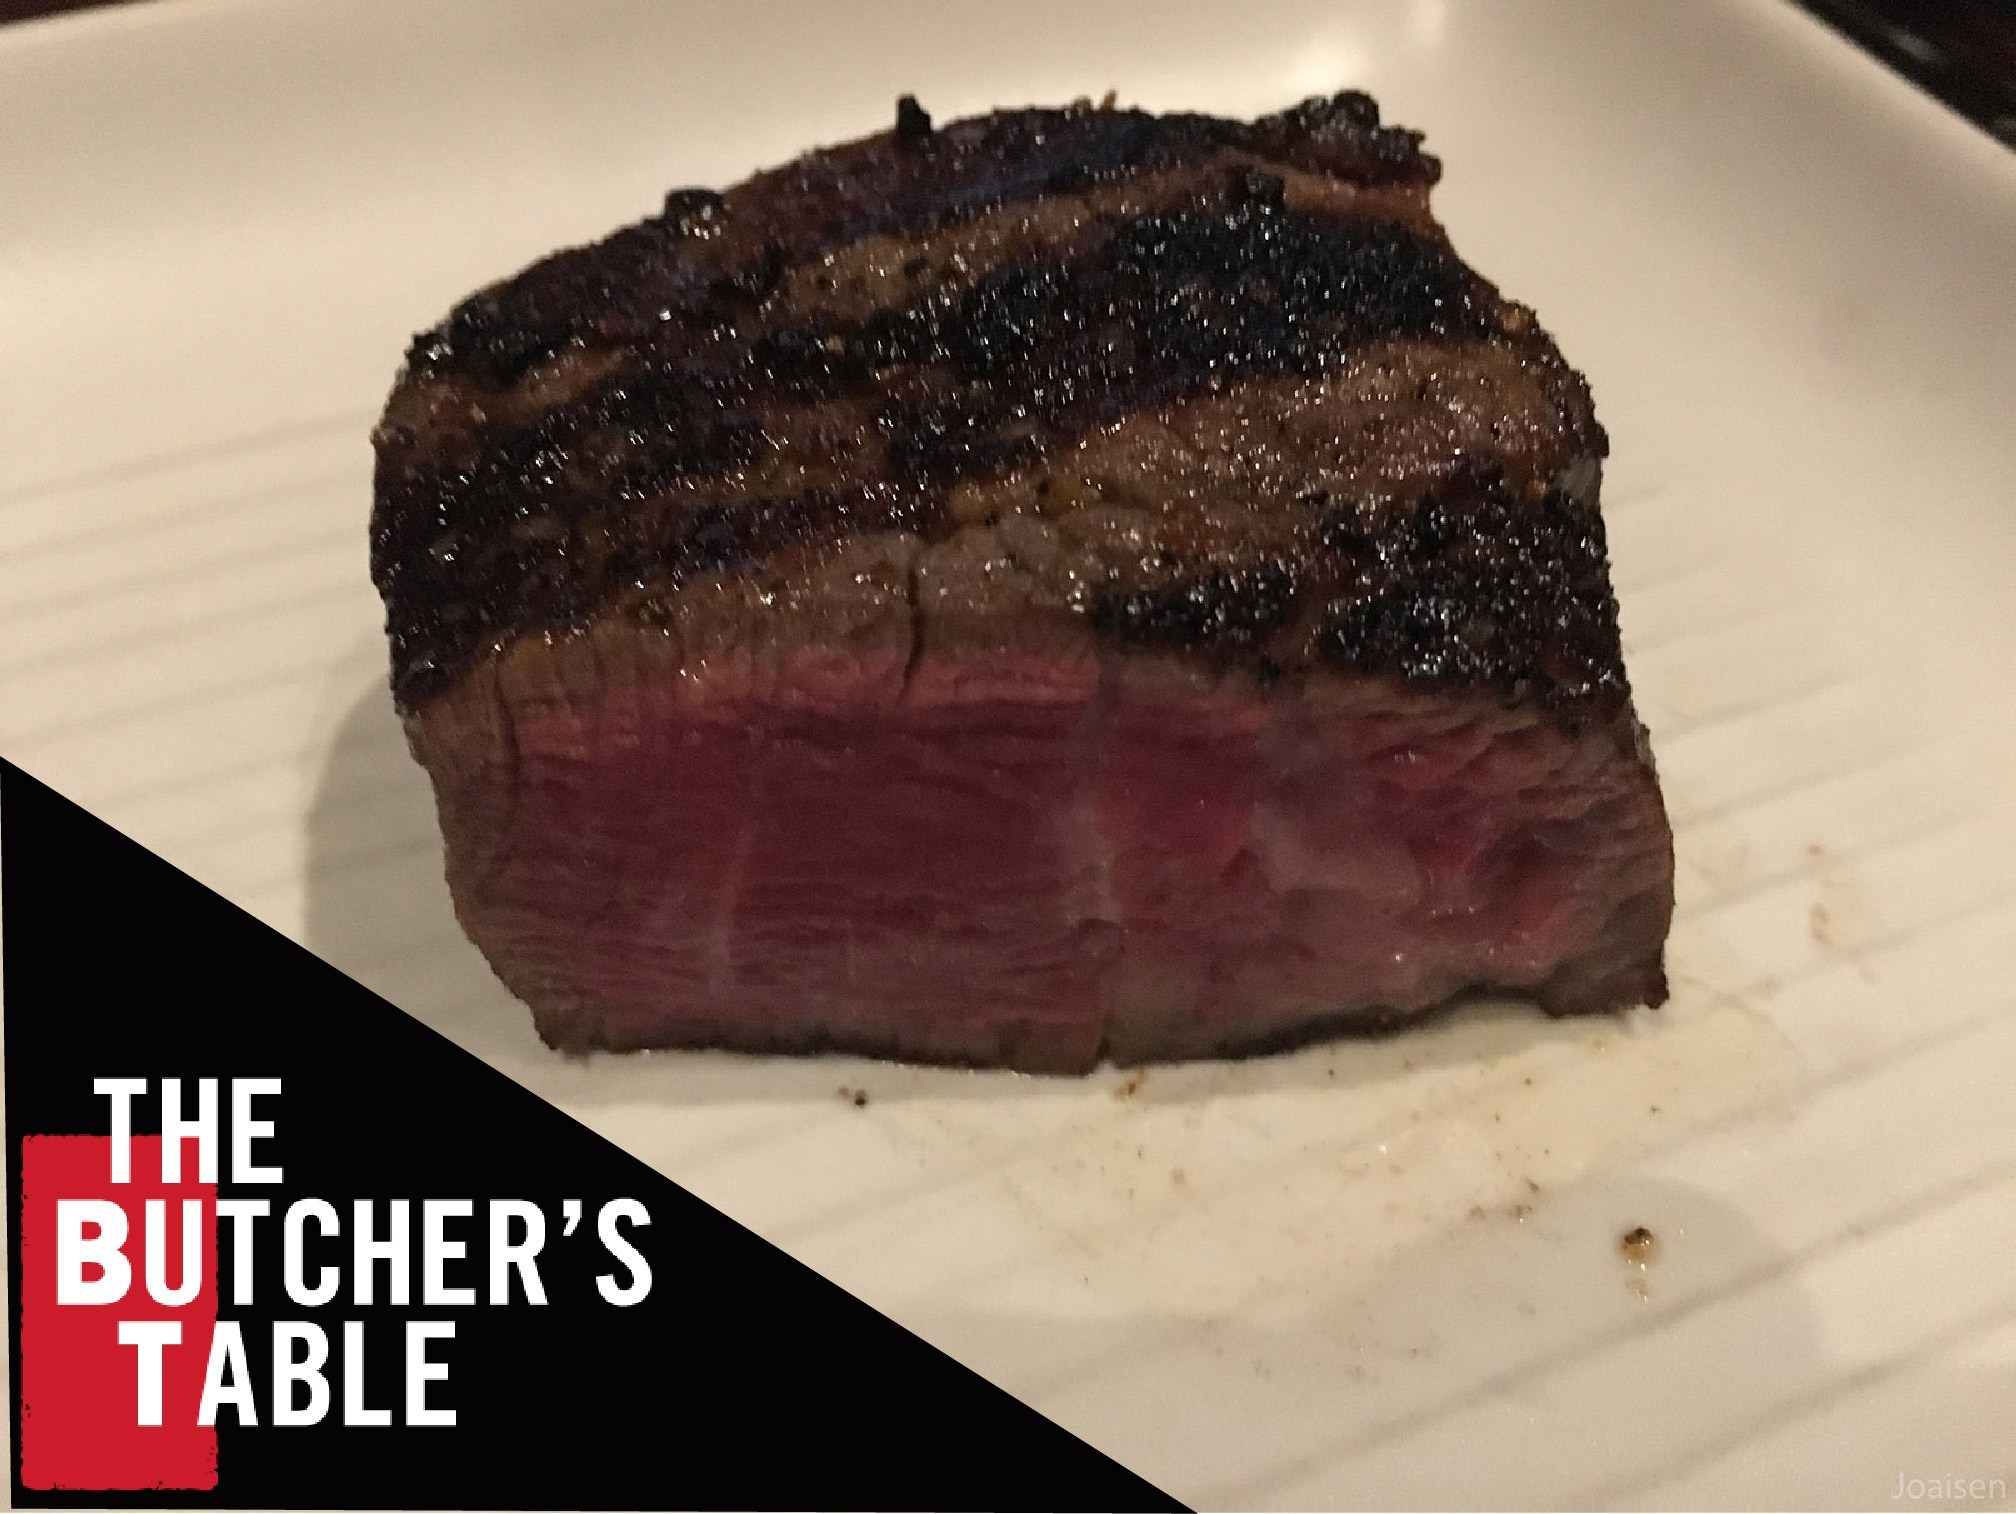 【美國華盛頓】「見島特選」貴鬆鬆的美國和牛！西雅圖「The Butcher’s Table」吃牛排！